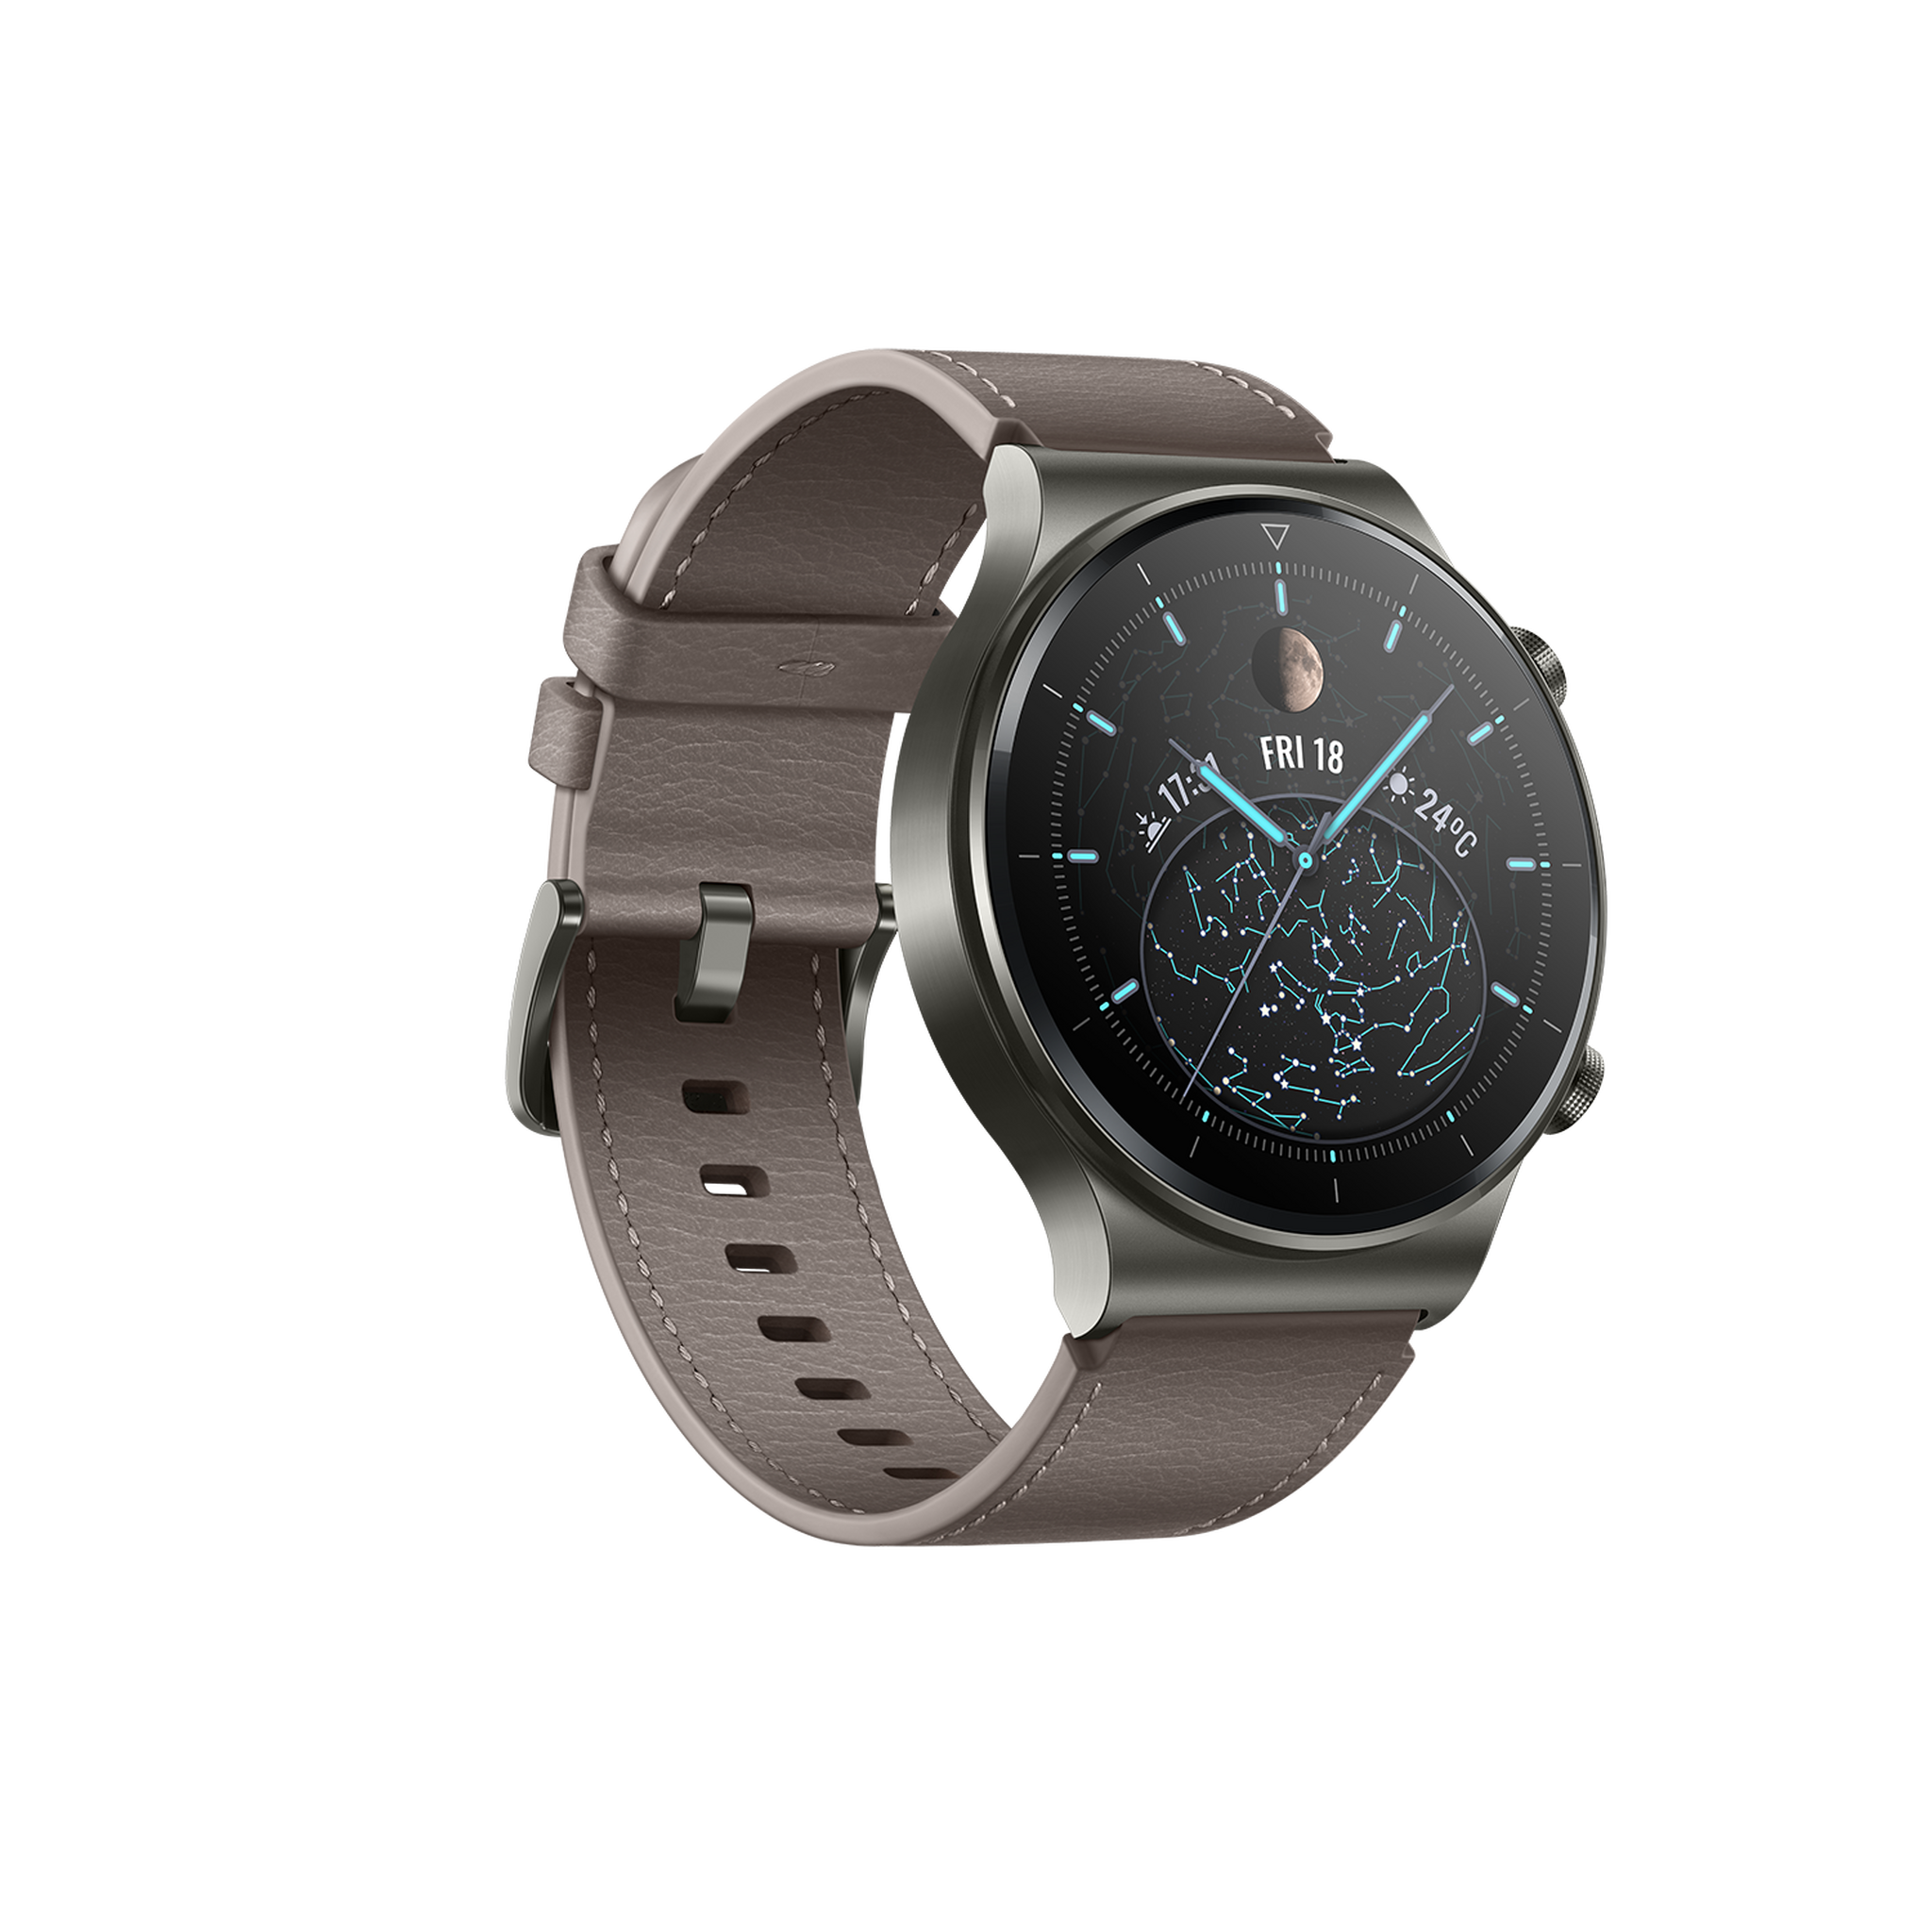 Huawei Watch GT2 Pro - Grey